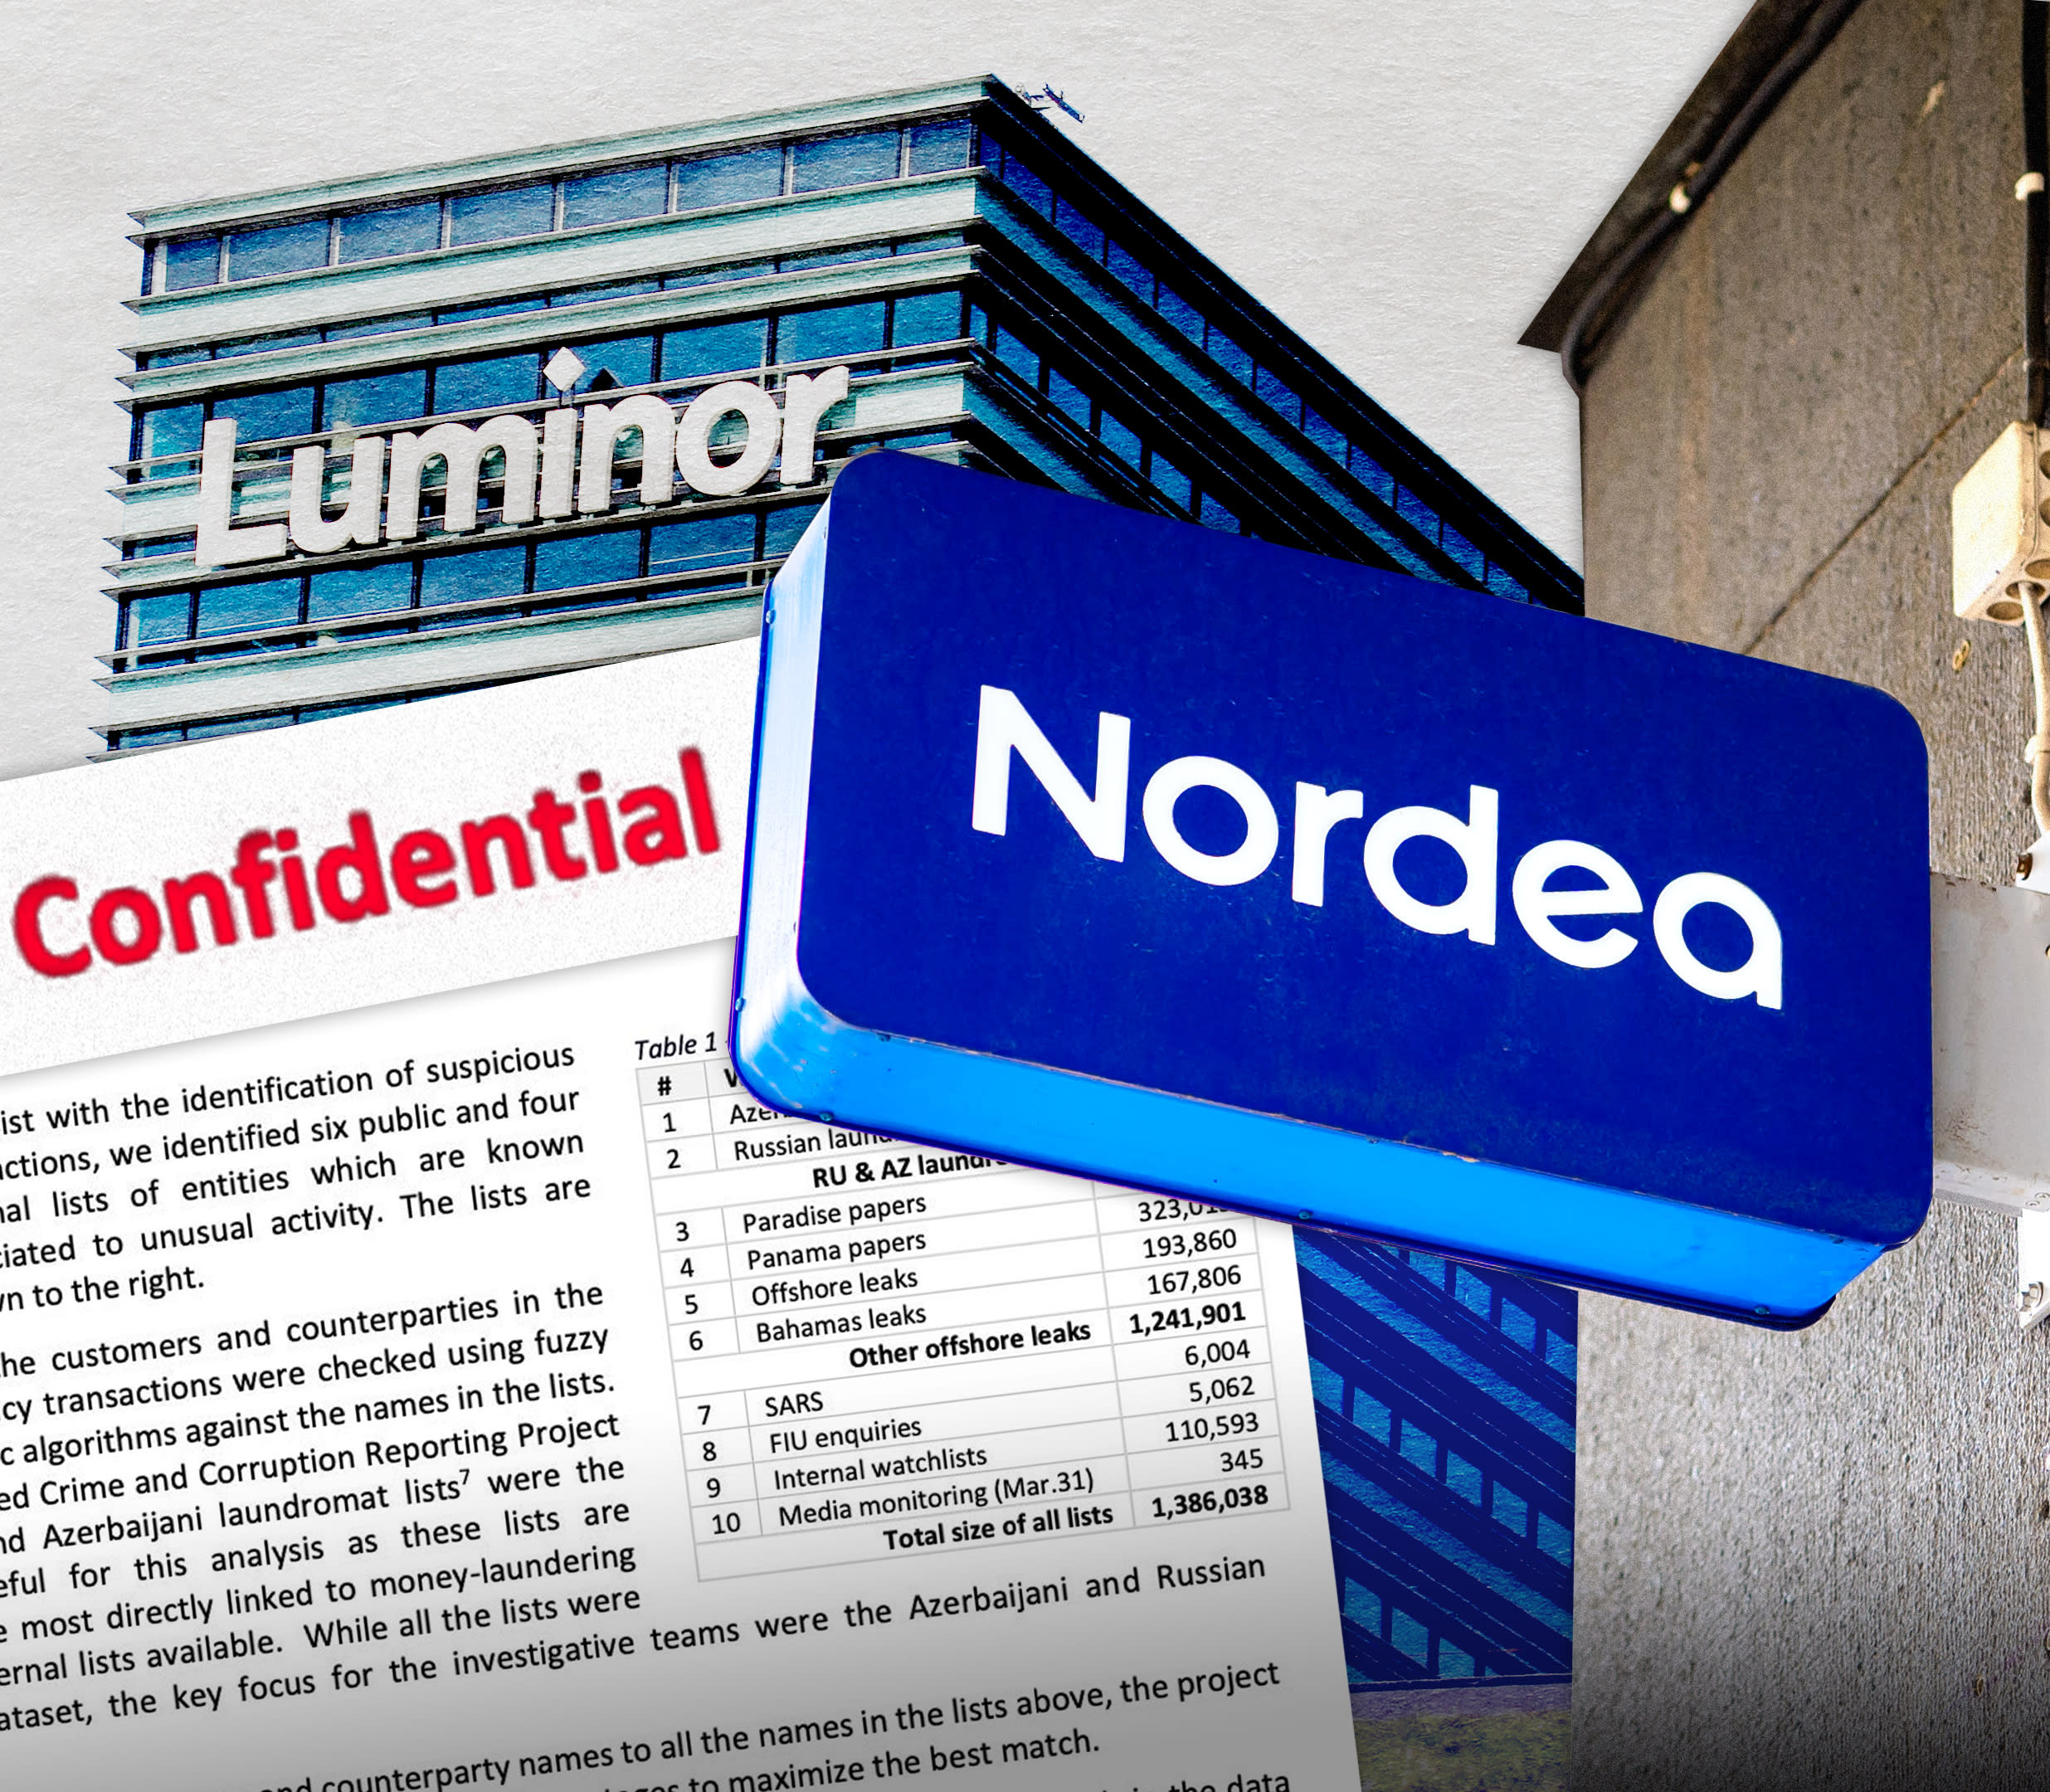 Yle: Eine durchgesickerte Inspektion zeigt, dass Nordea Bedenken hinsichtlich der Geldwäsche ignoriert hat